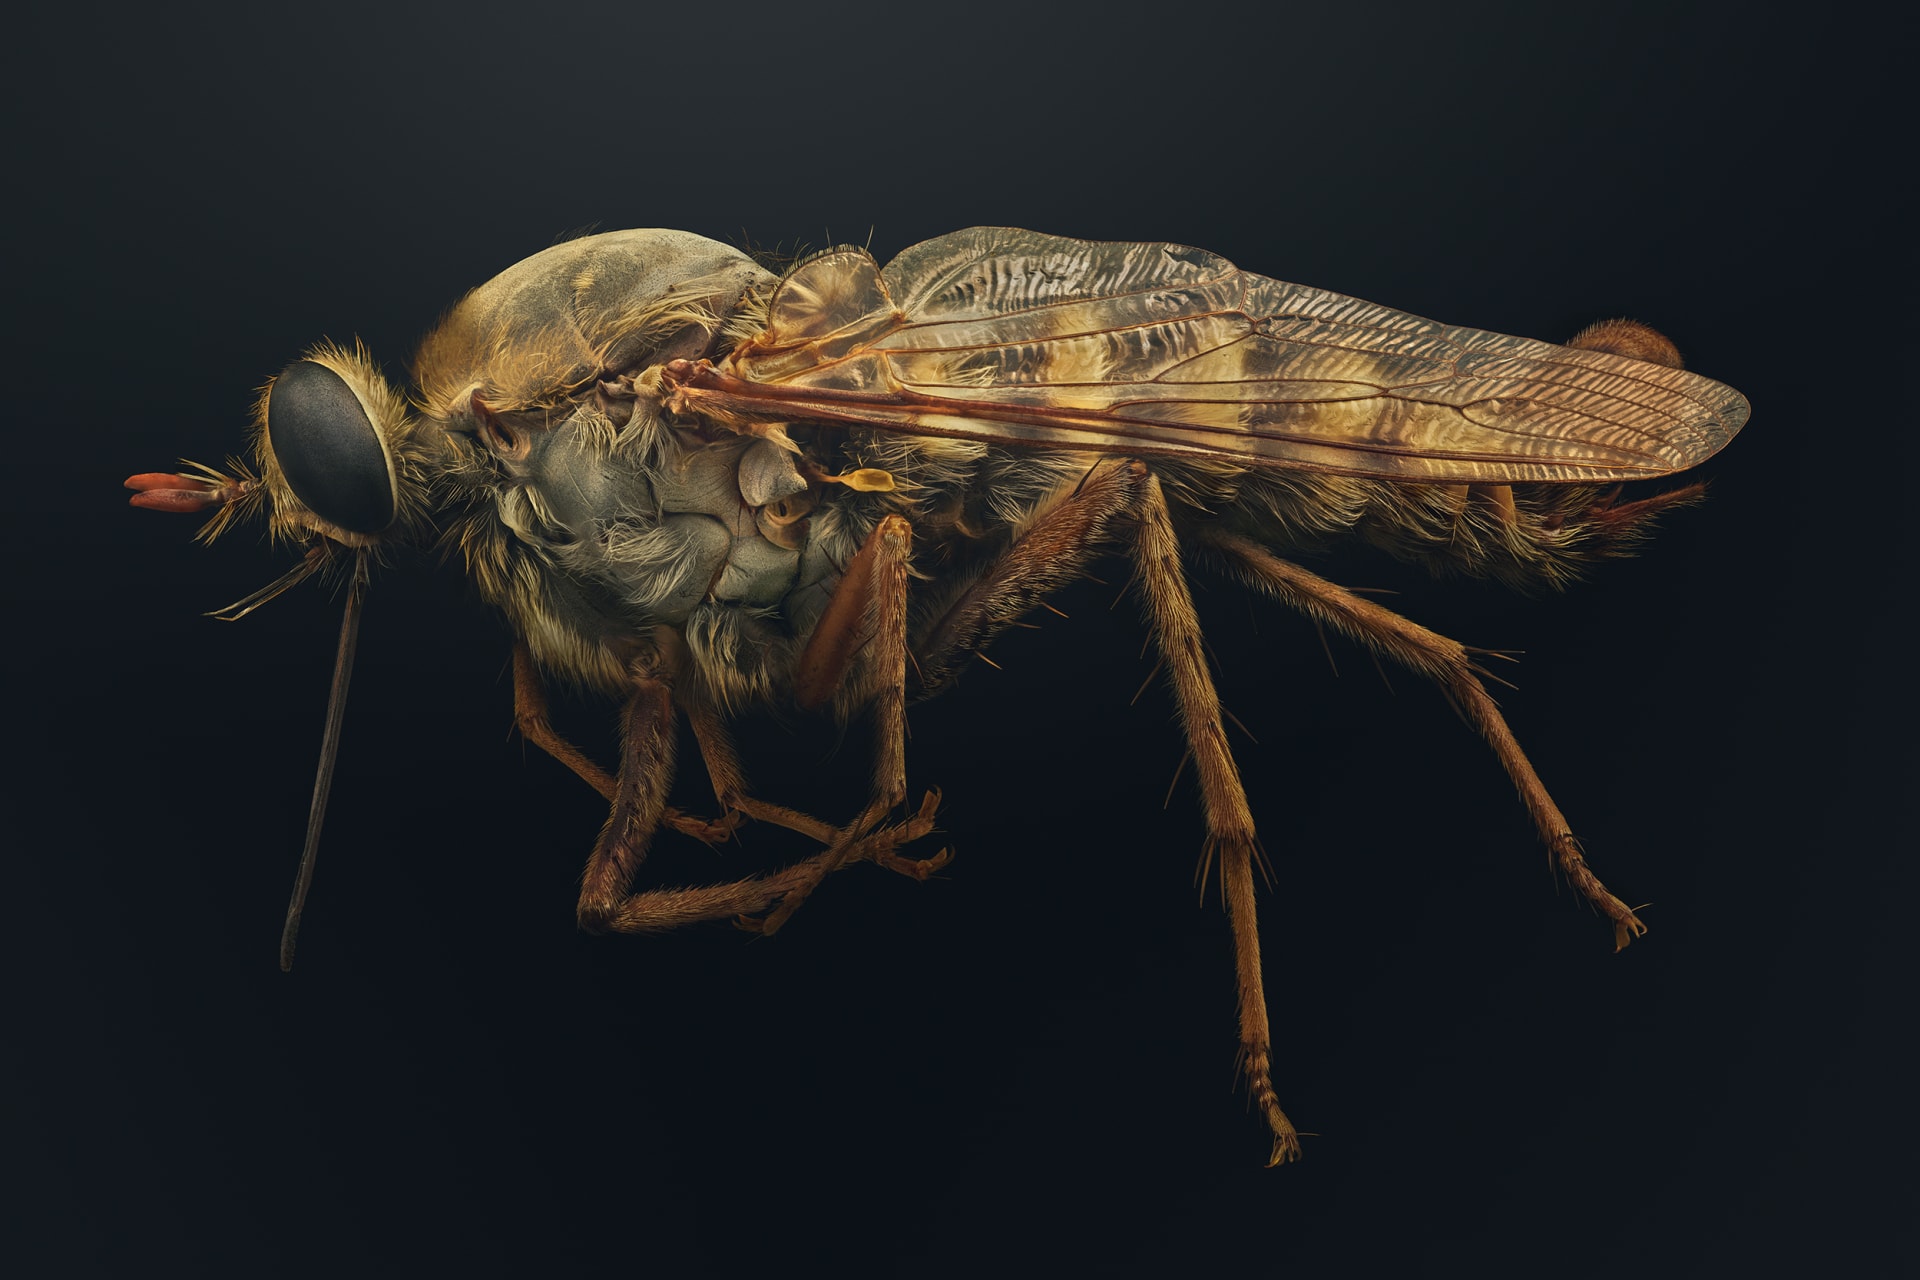 "حشراتٌ في خطر"..صور دقيقة تبرز جمال مخلوقات مهددة تشاركنا الكوكب